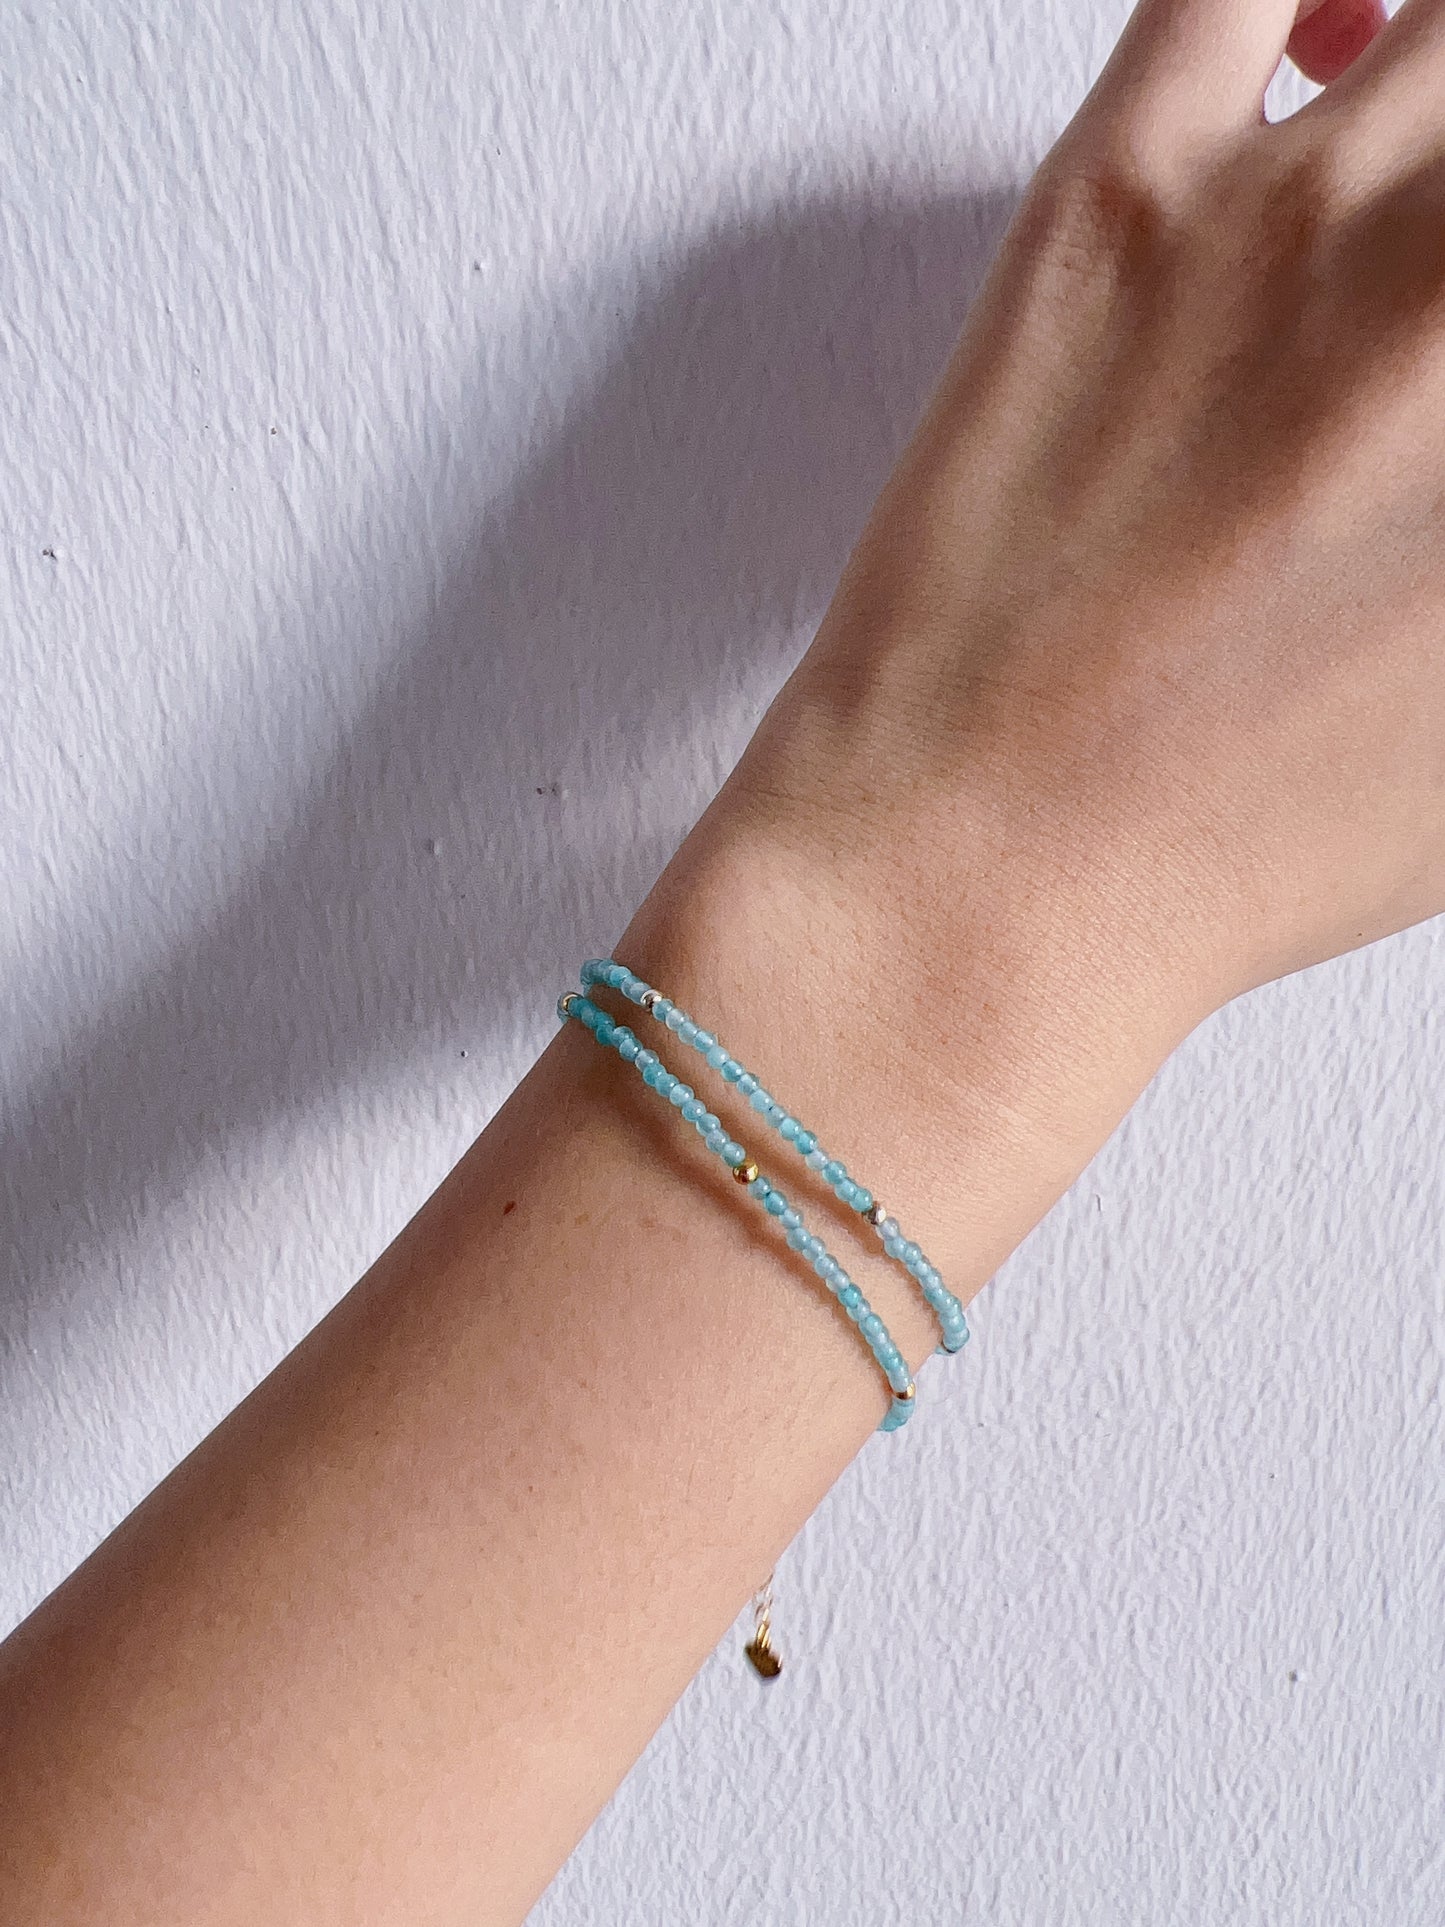 Care Band Amazonite Bracelet